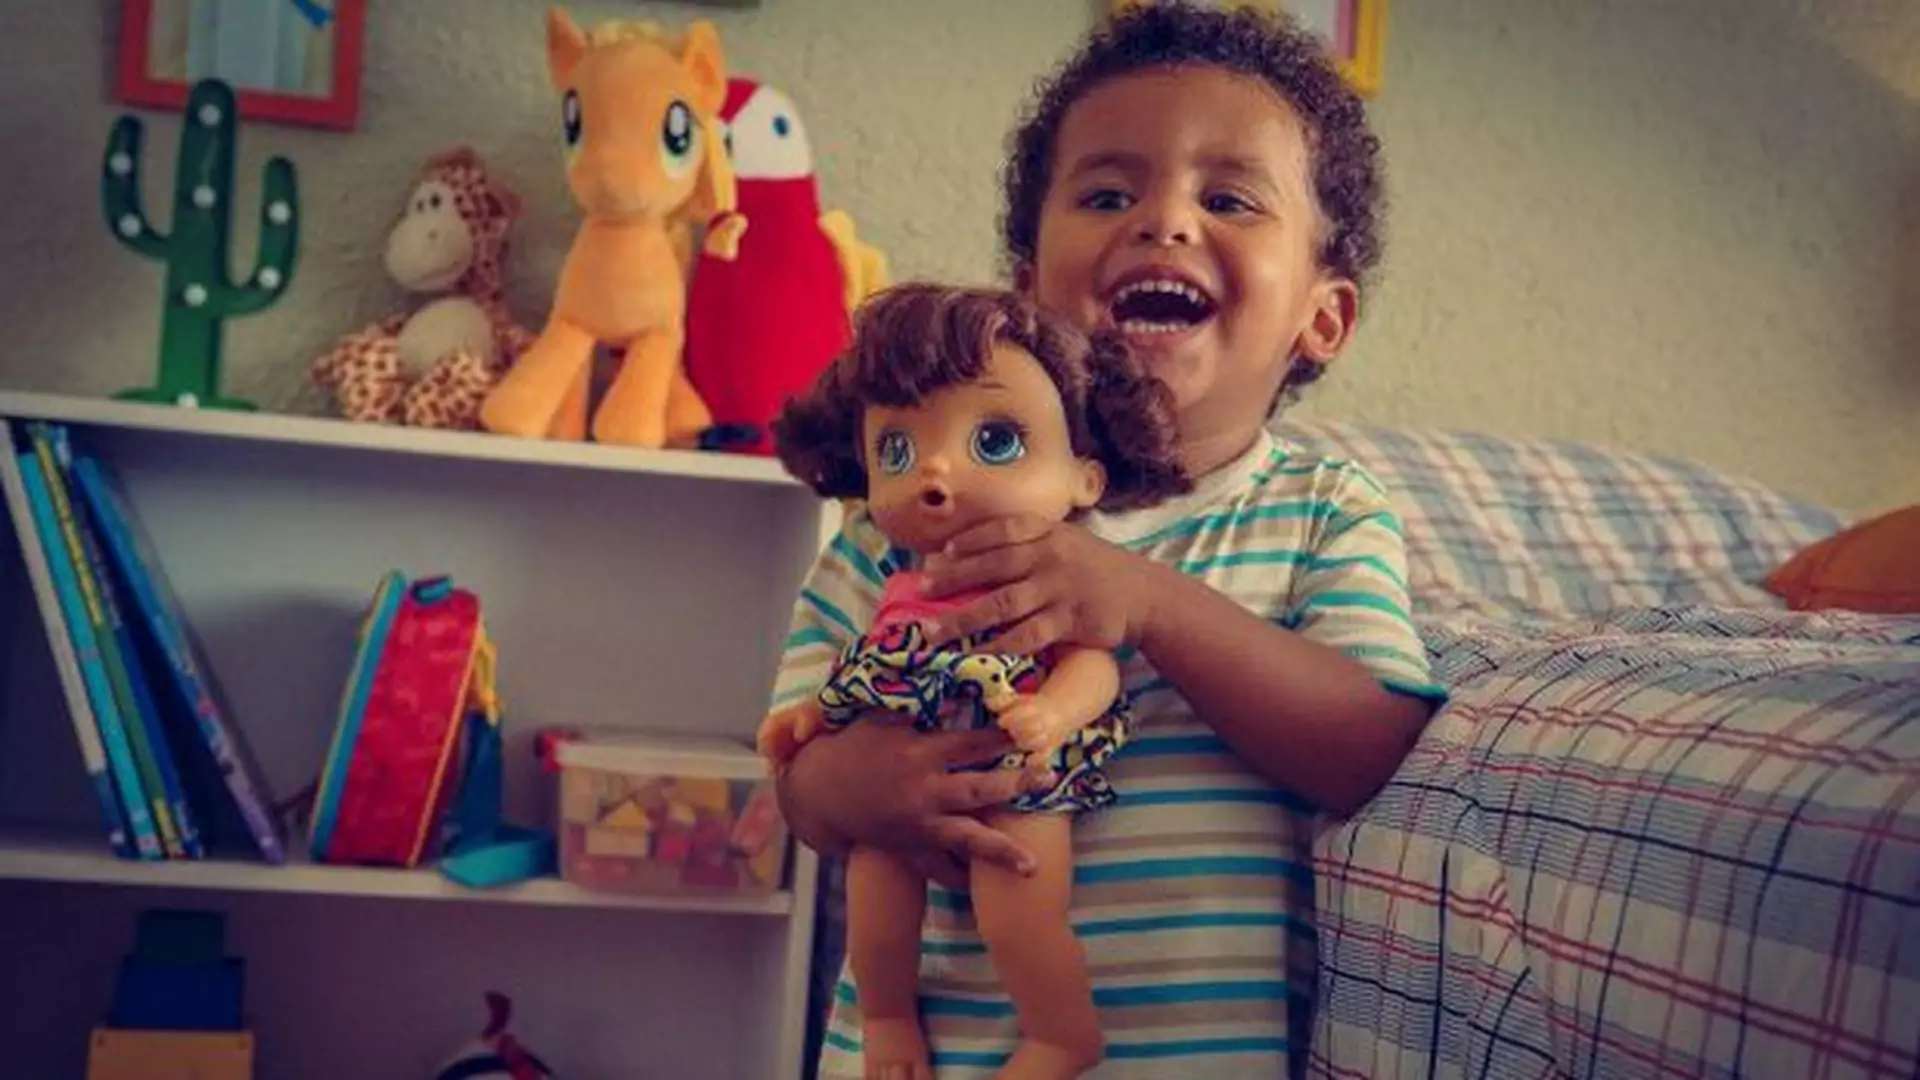 Reklama w piękny sposób wyjaśnia, dlaczego chłopcy powinni bawić się lalkami